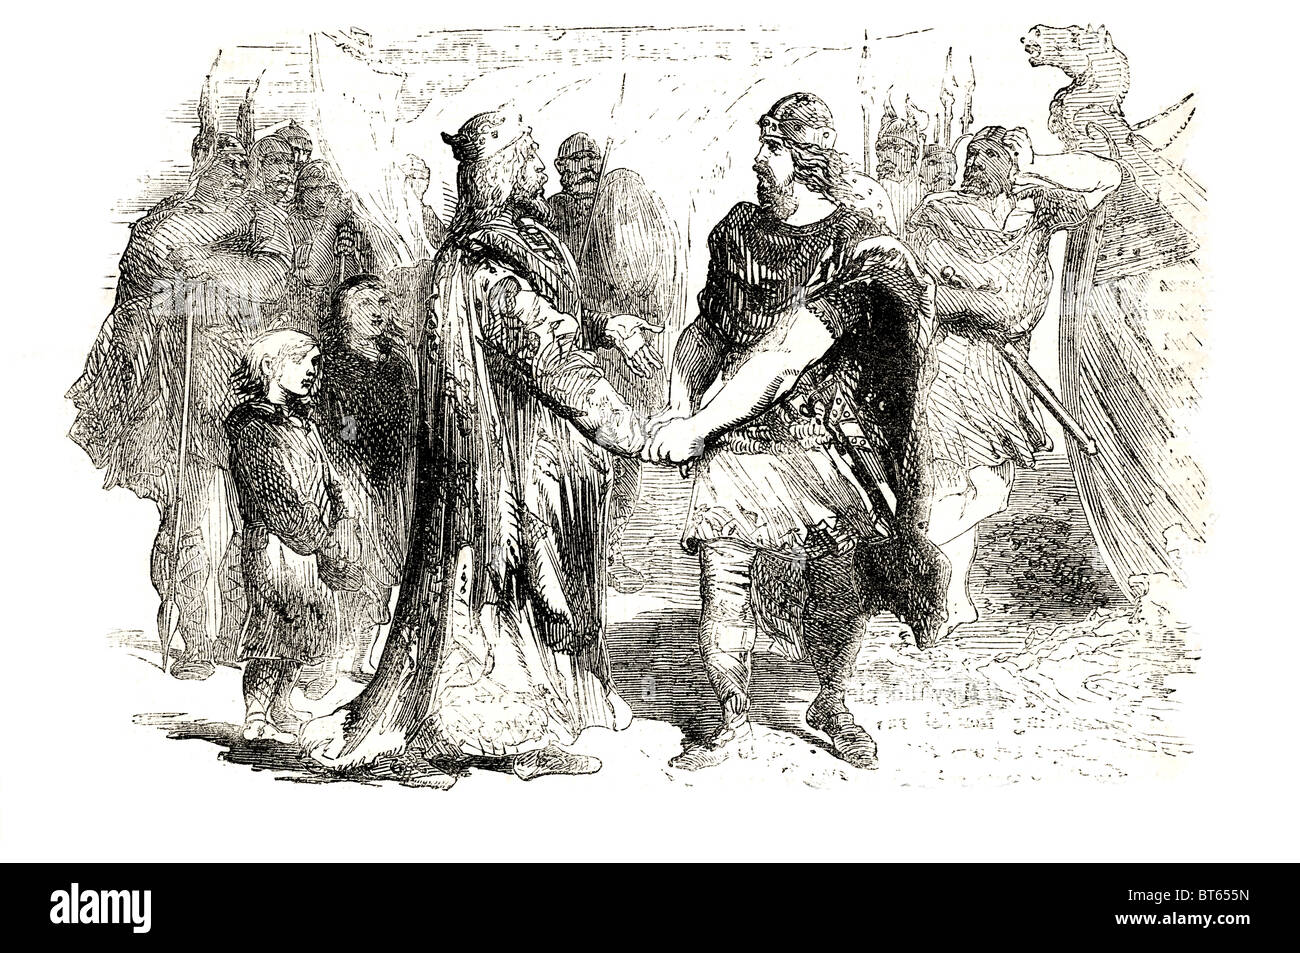 Edmund ironside e canuto incontro sull isola di alney grande Norreno: Knūtr inn rīki. 985 o 995 - 12 novembre 1035 re di Den Foto Stock